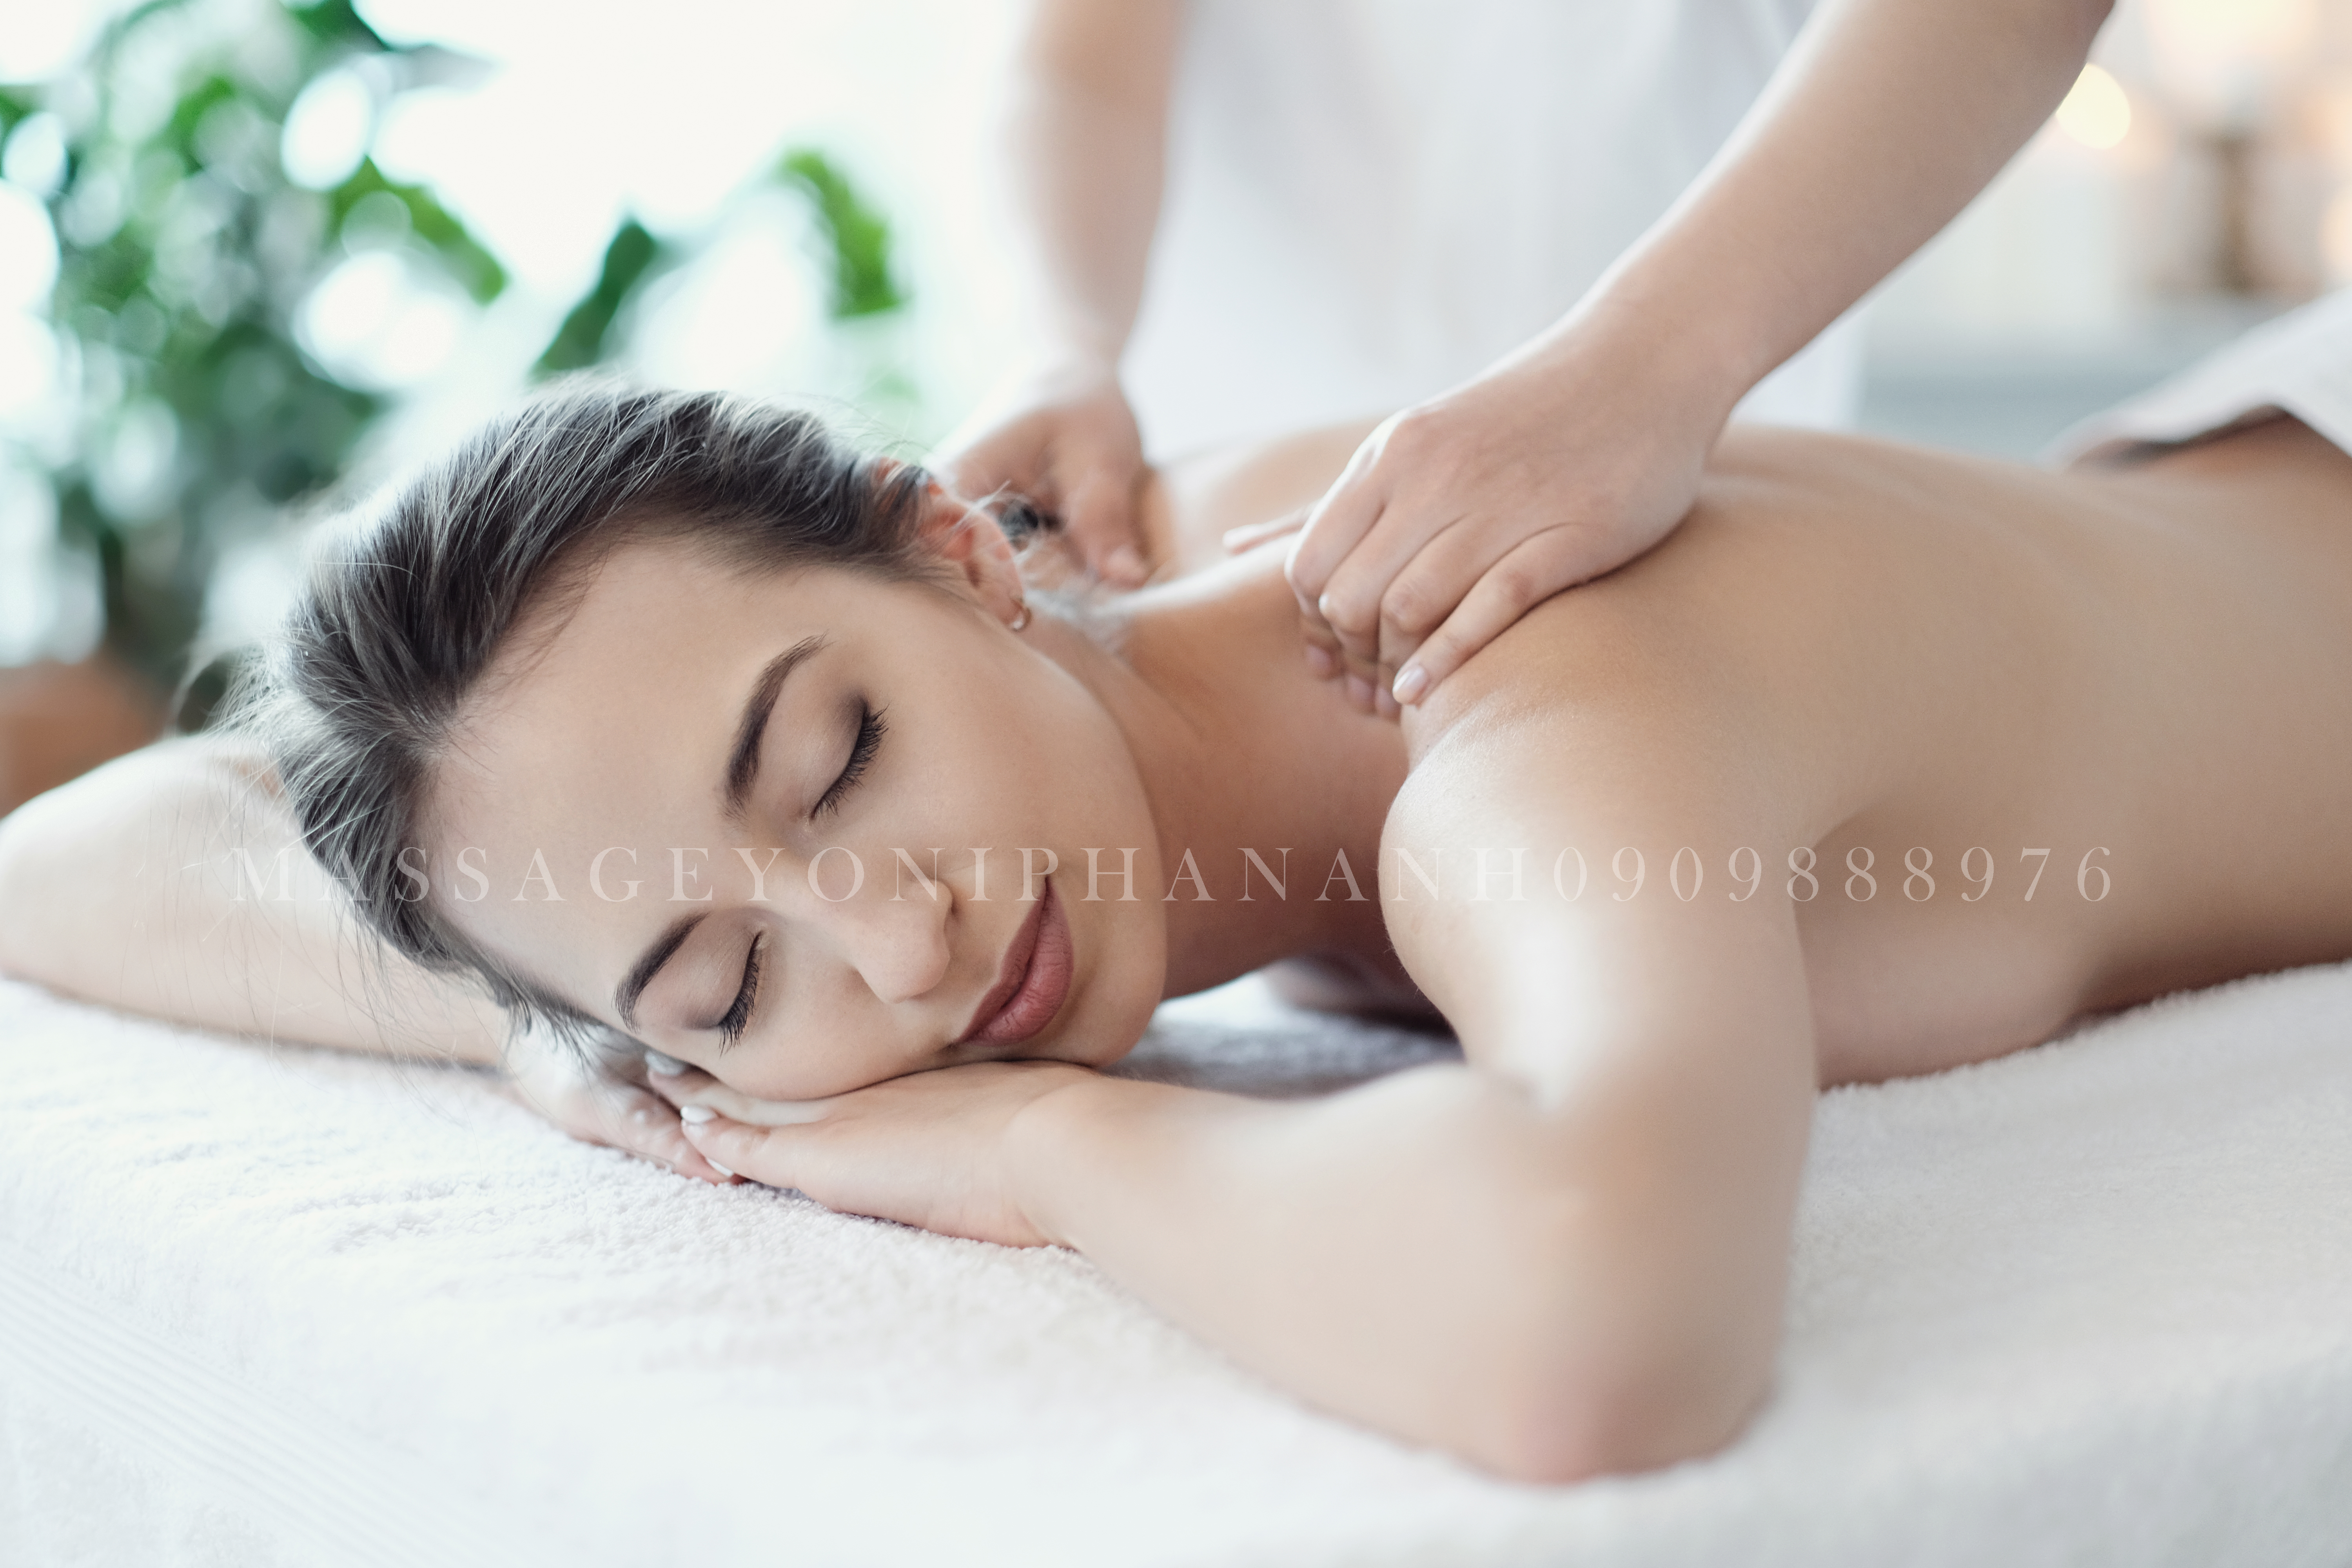 dịch vụ massage yoni cho nữ quân tân bình